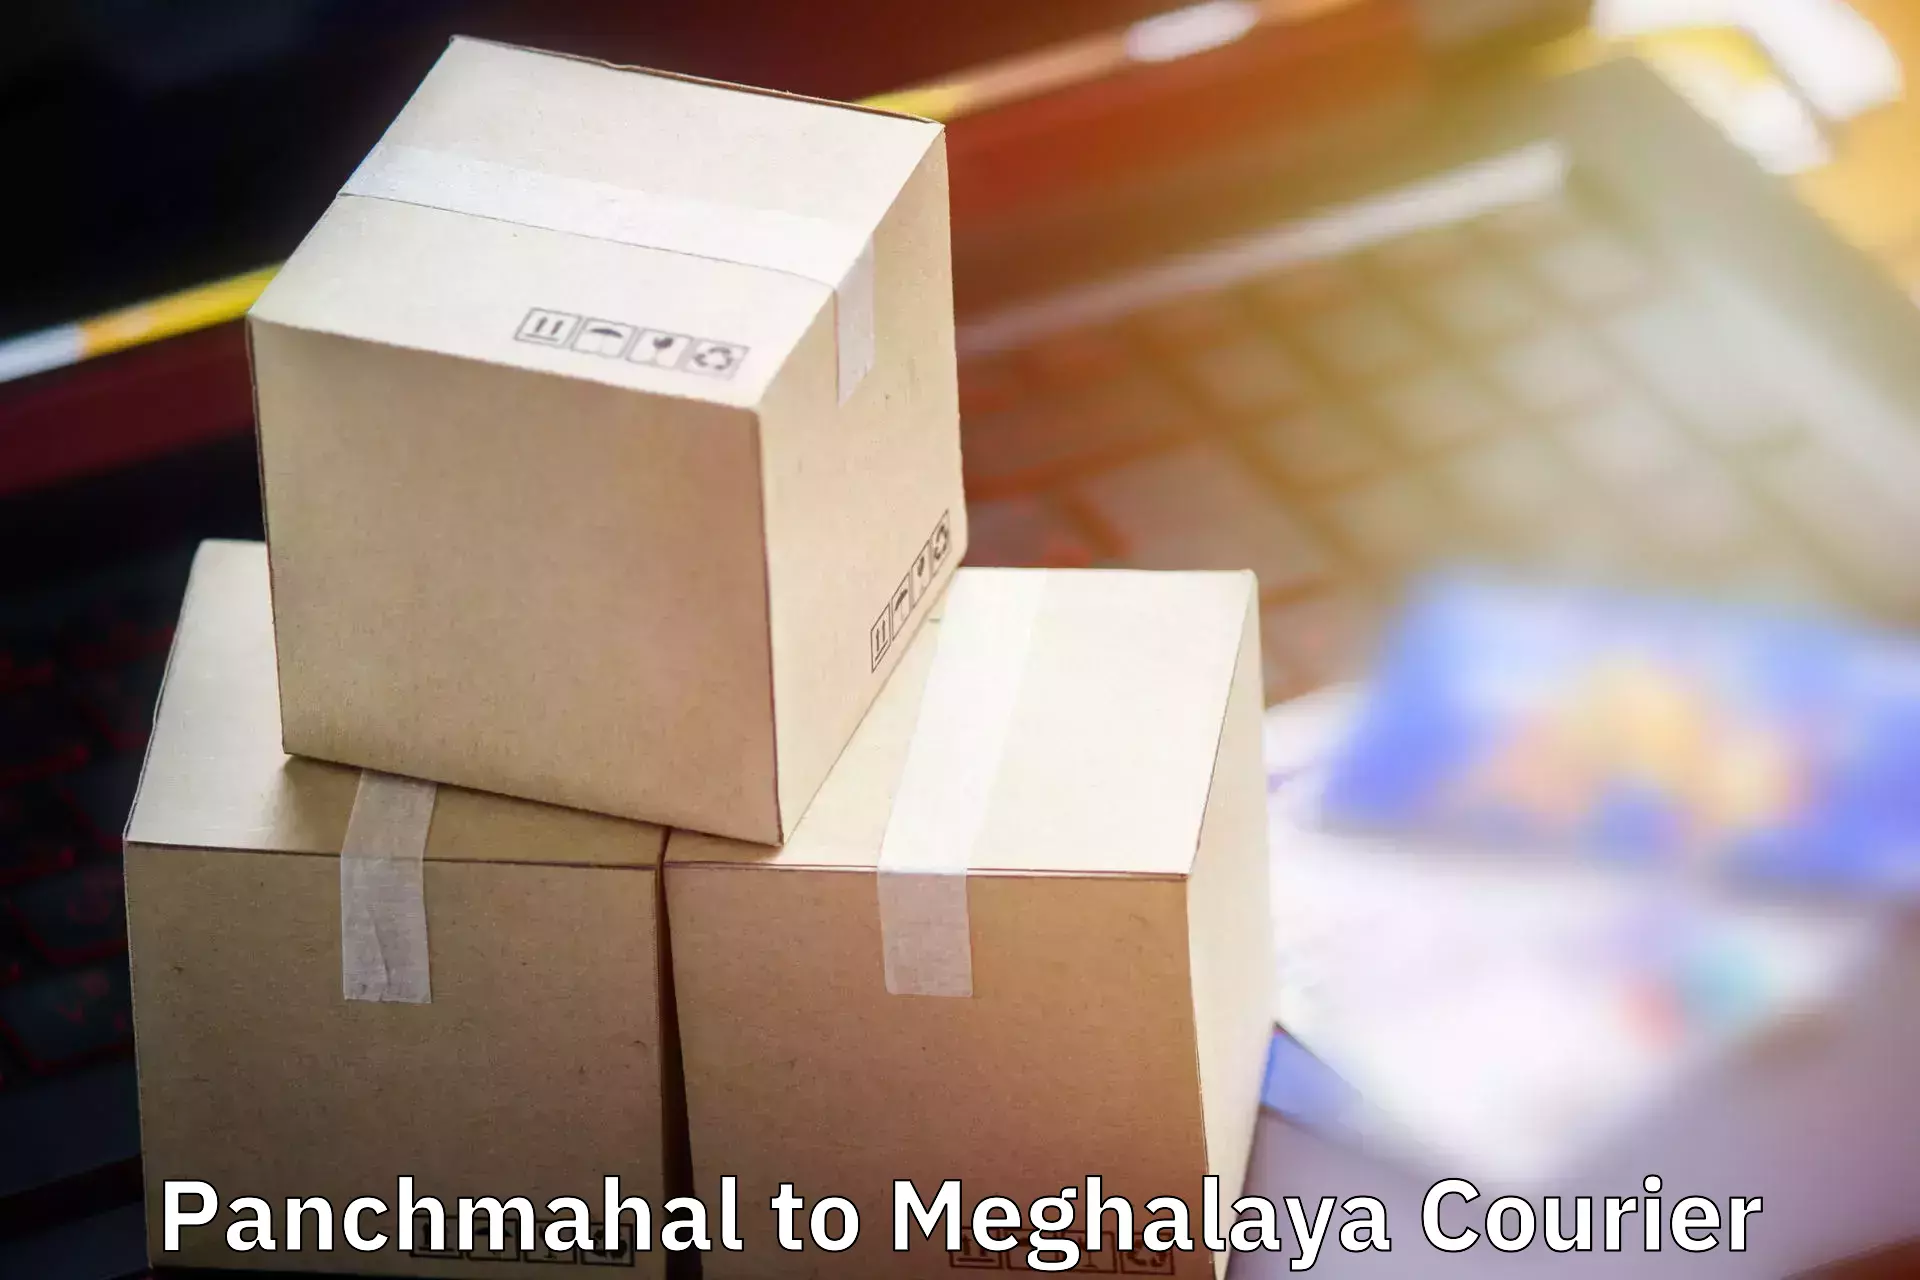 Baggage shipping optimization Panchmahal to Tura